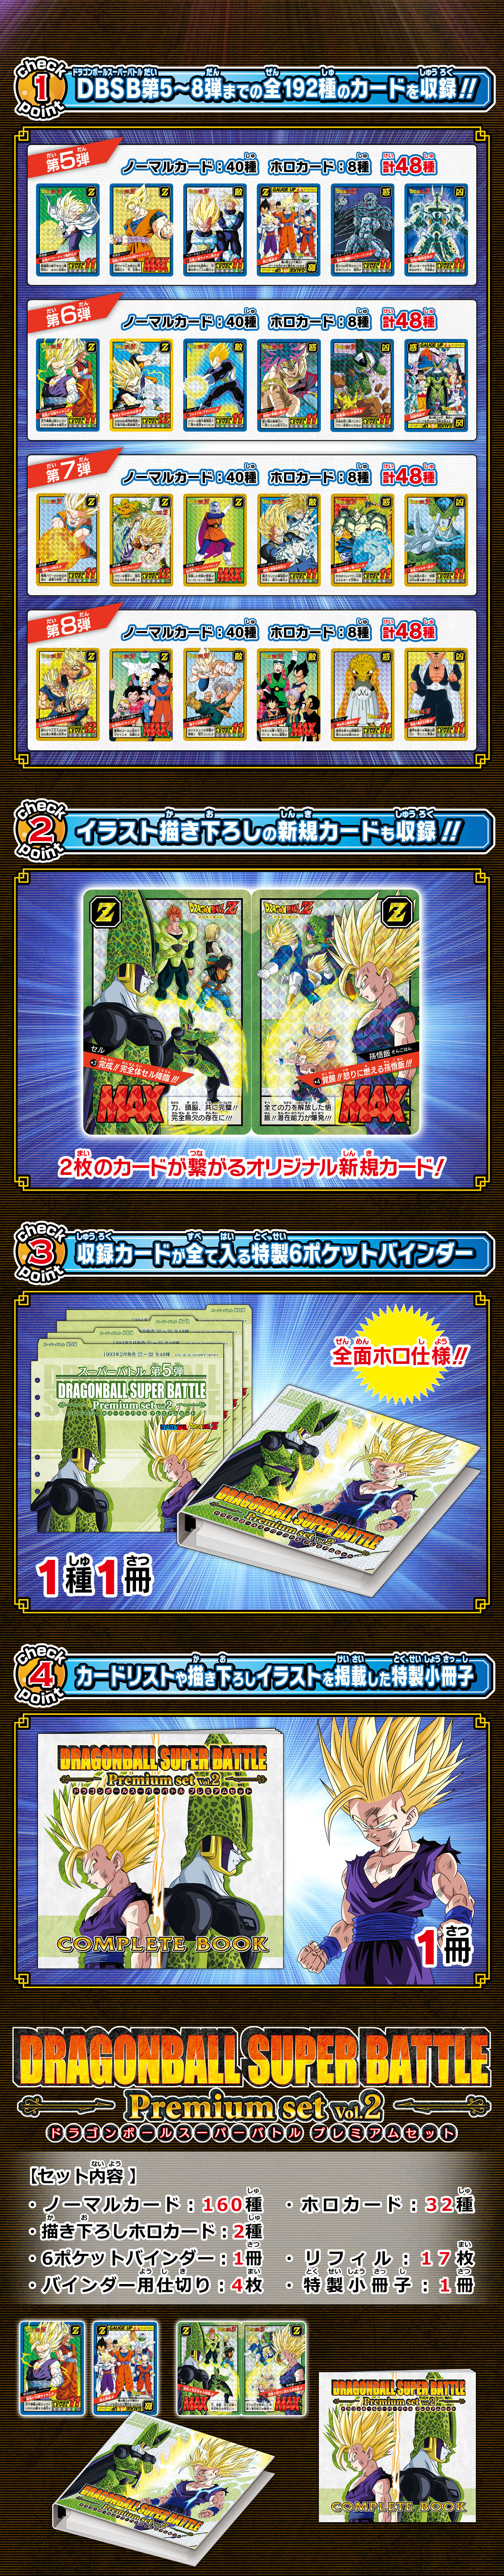 カードダス ドラゴンボール スーパーバトル Premium set Vol.2| プレミアムバンダイ